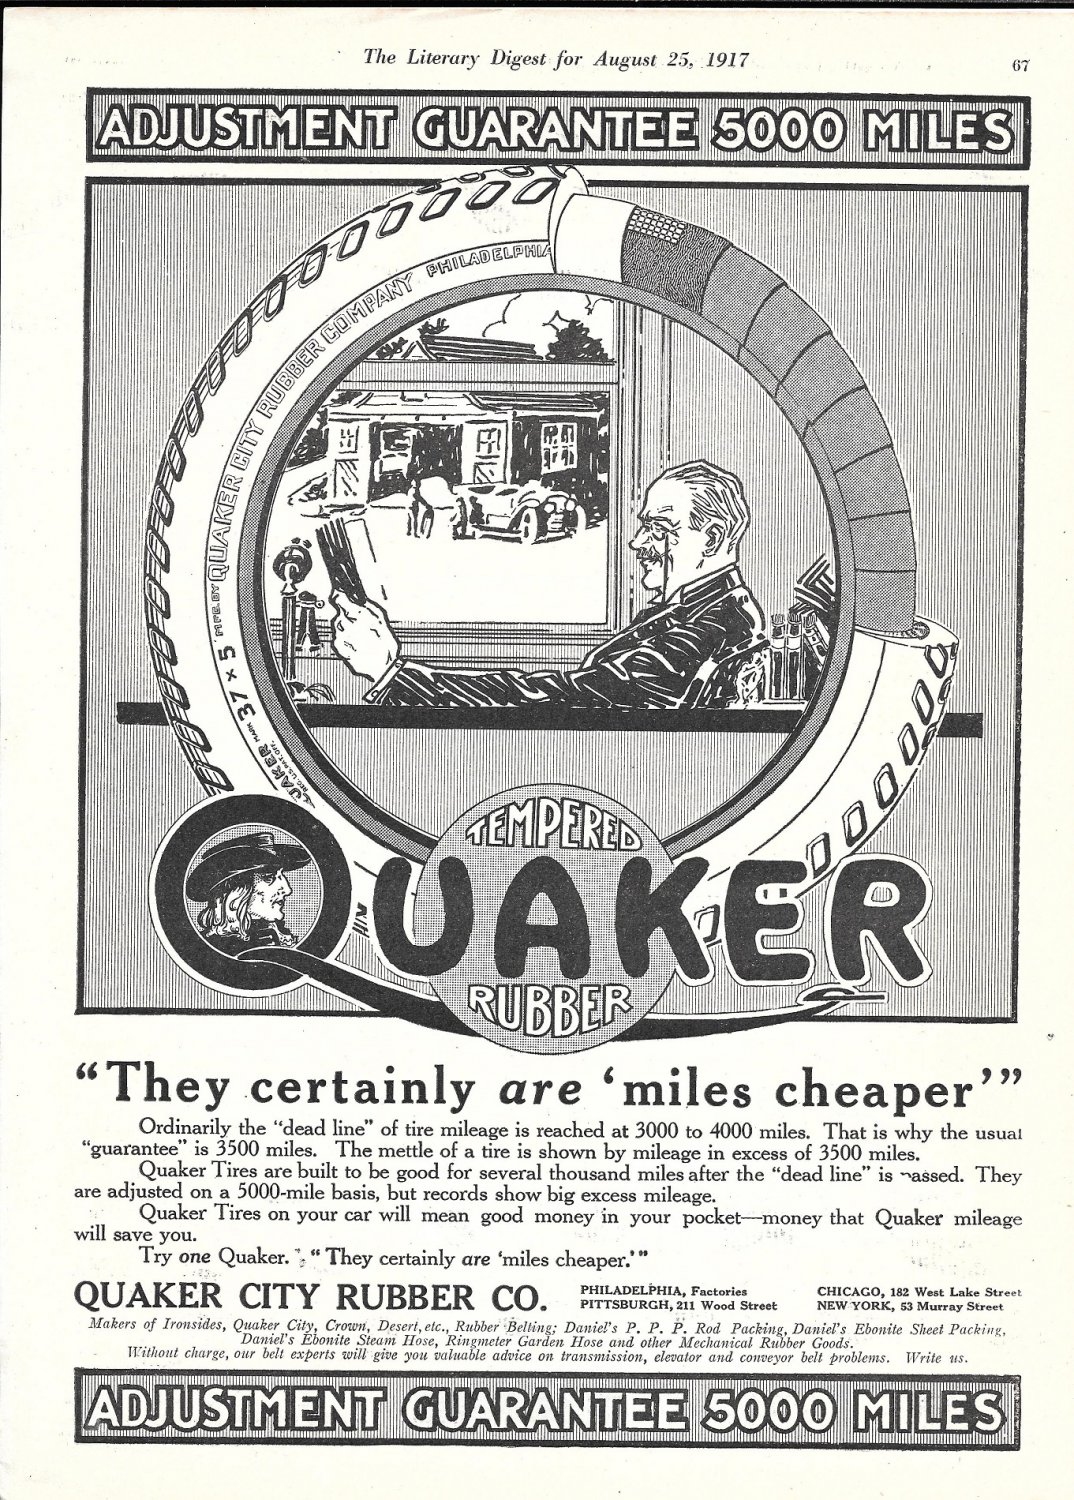 1917 Quaker City Rubber Co Tires Miles Cheaper Ad